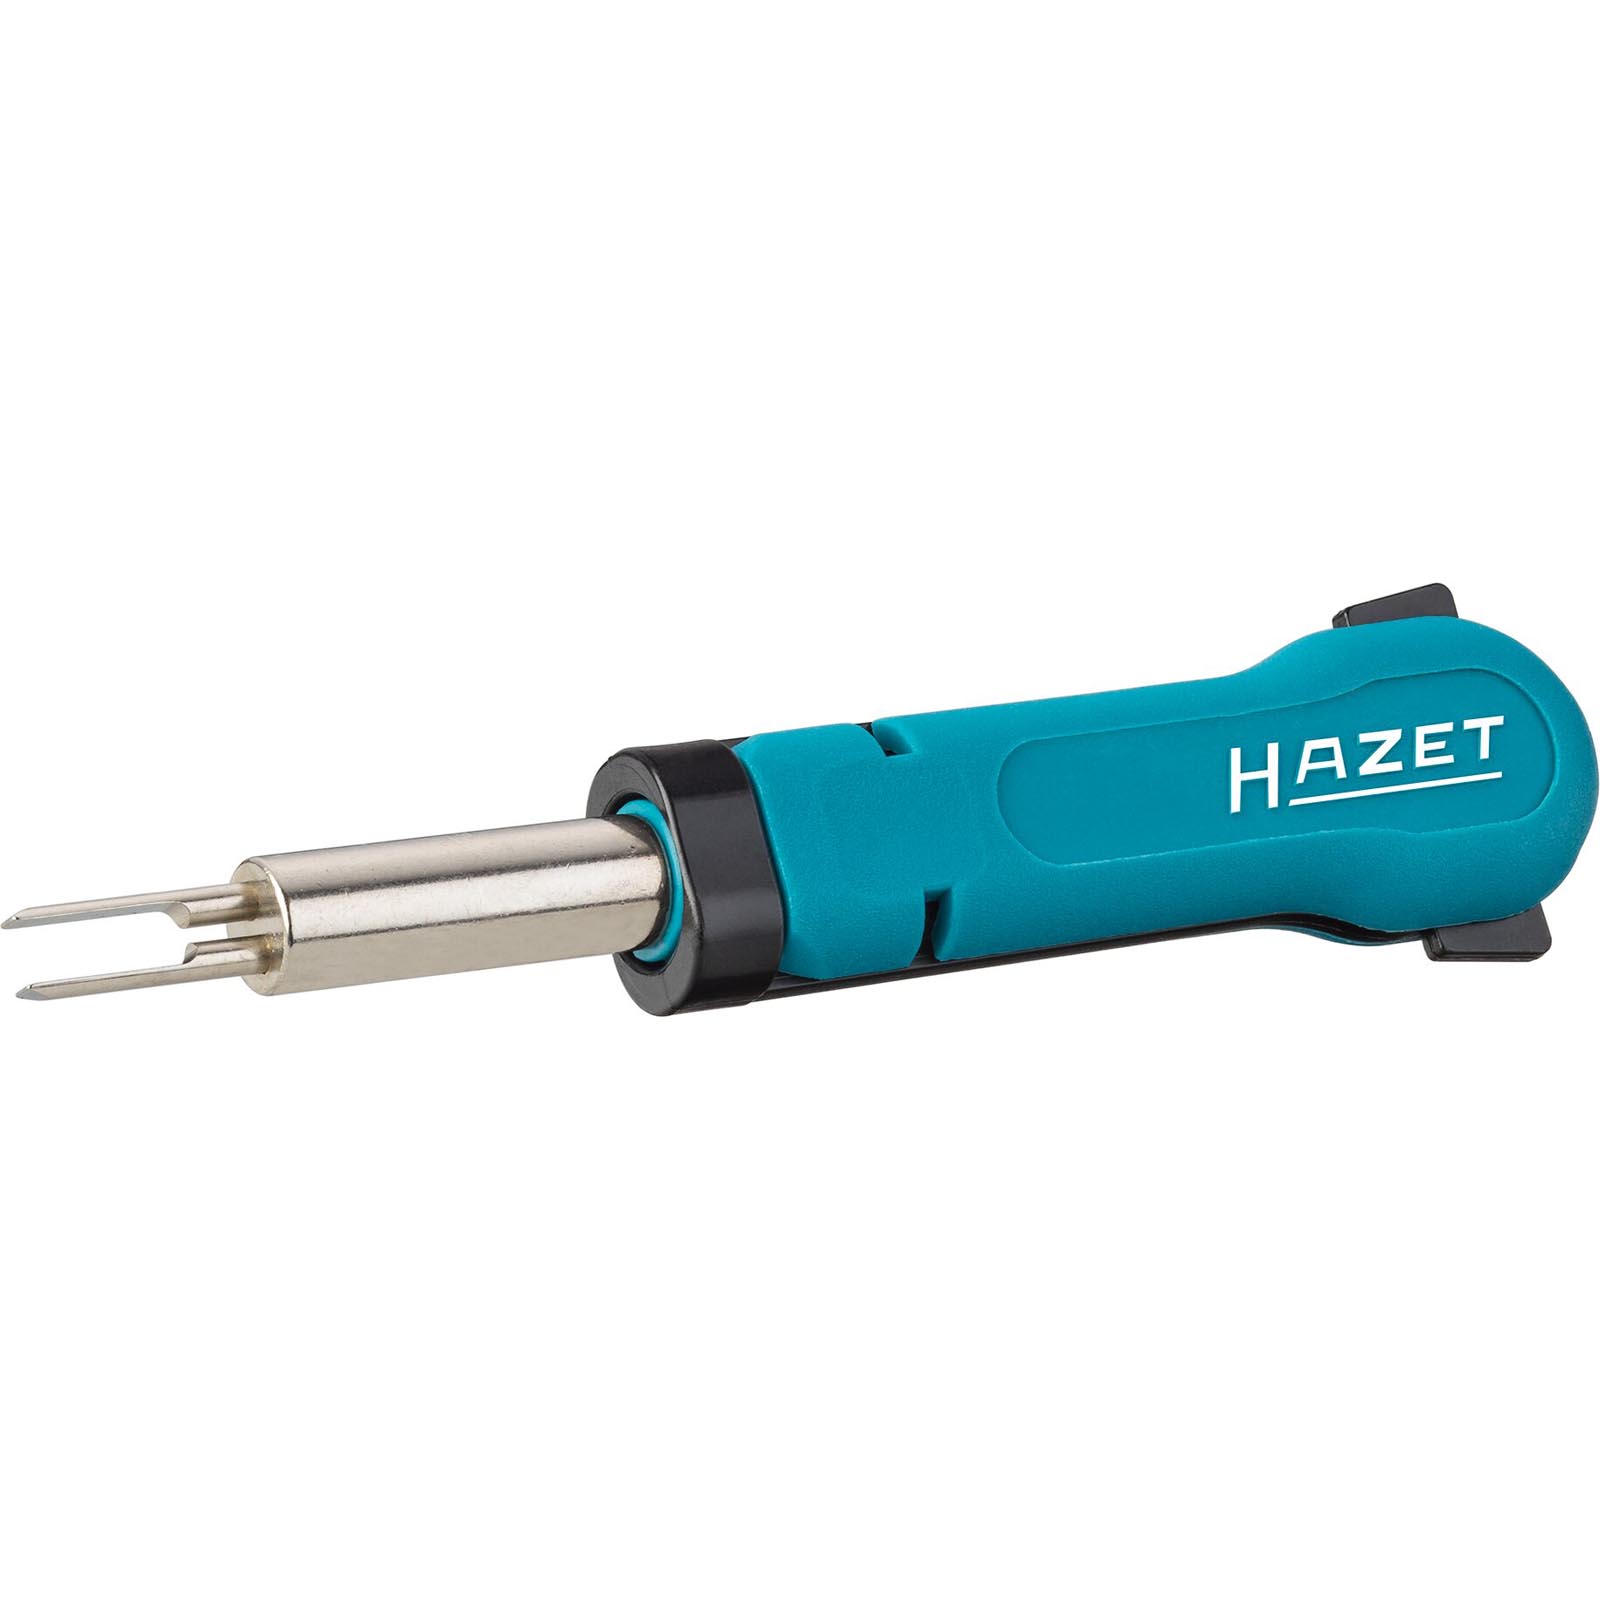 HAZET Release Tools